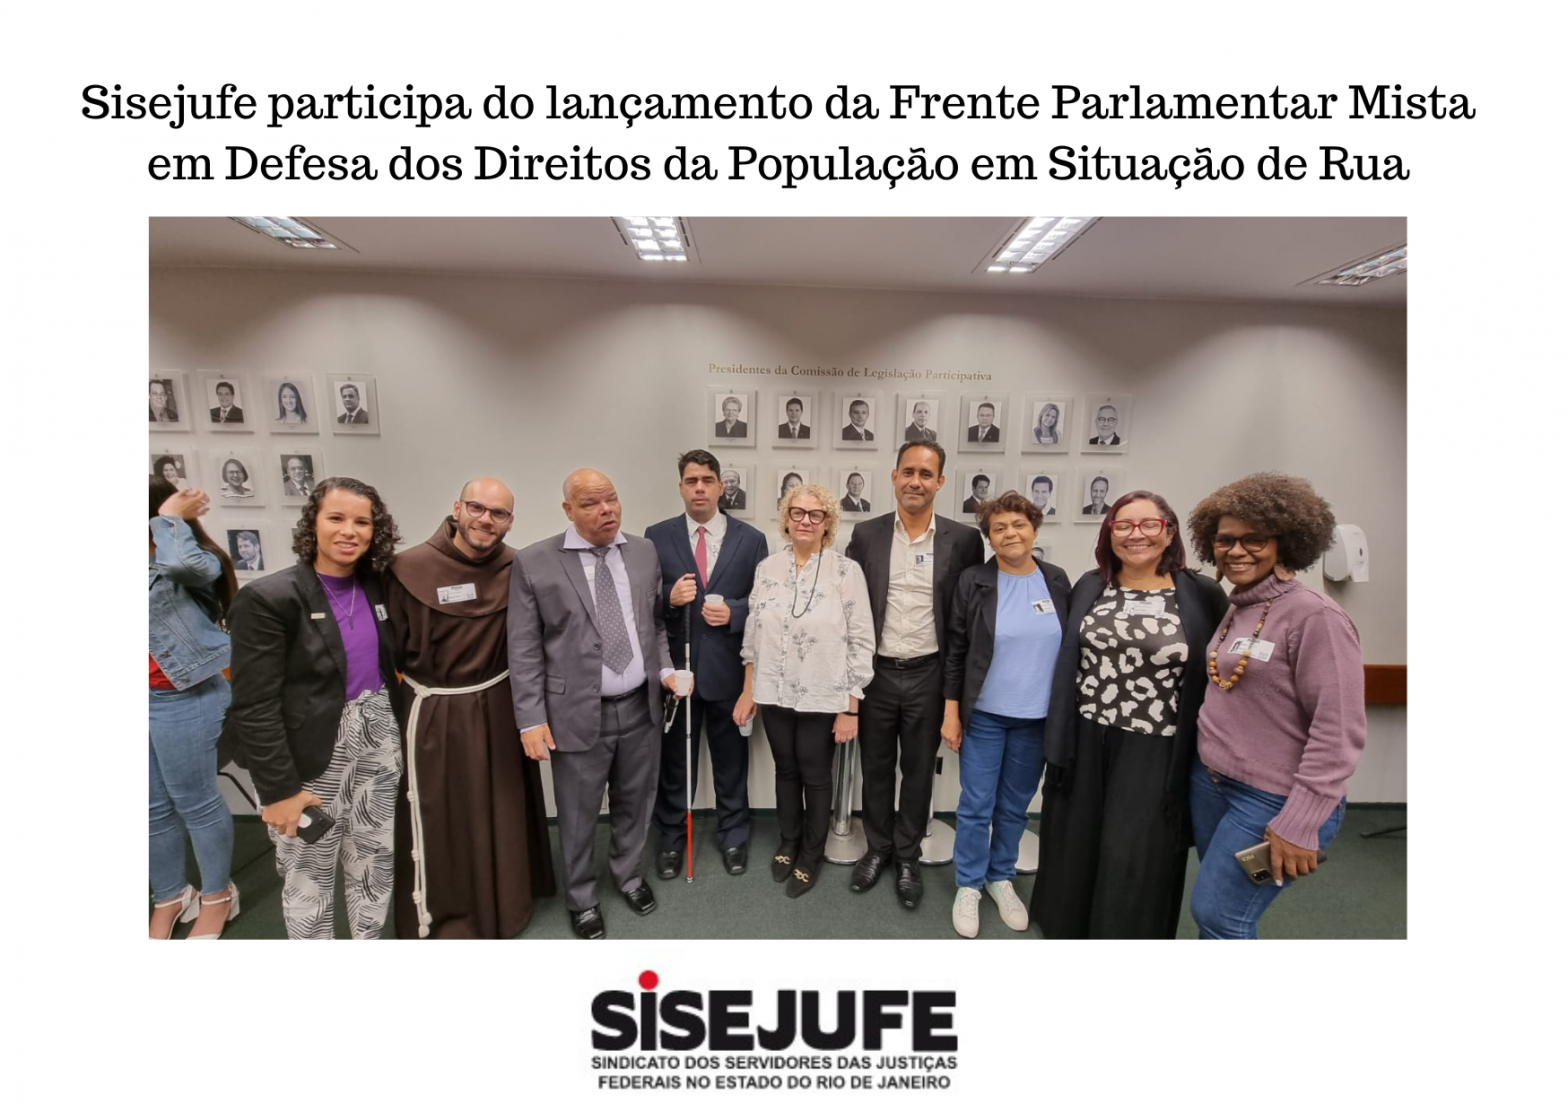 Sisejufe participa do lançamento da Frente Parlamentar Mista em Defesa dos Direitos da População em Situação de Rua, SISEJUFE